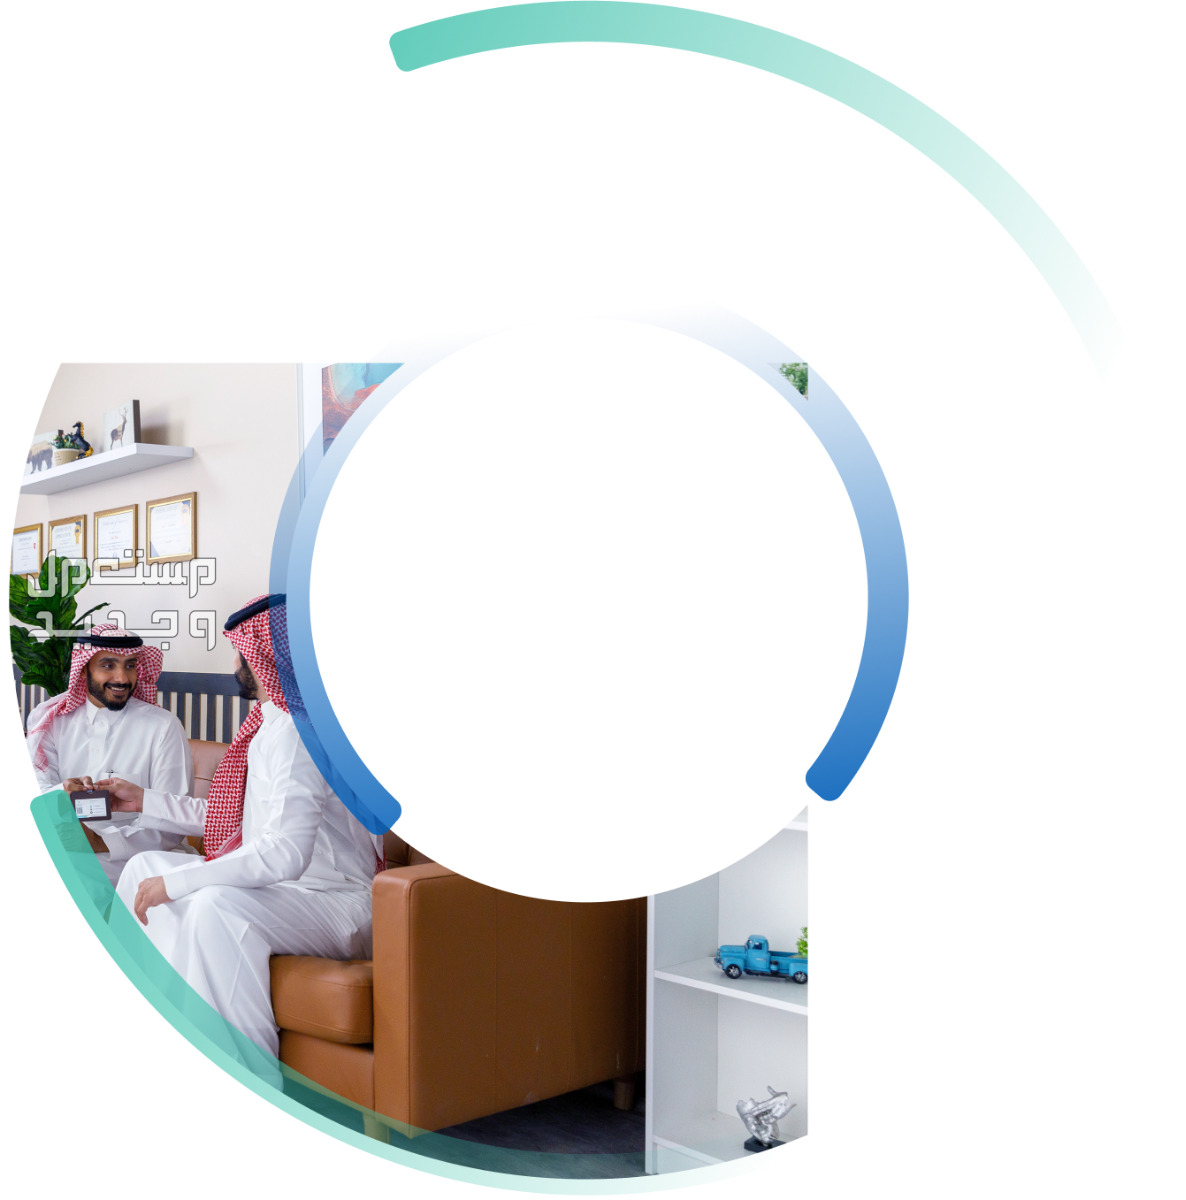 مجاني ومدى الحياة «التأمين الطبي الوطني الشامل».. كل ما تريد معرفته بالانواع والمميزات التأمين الطبي الوطني الشامل في السعودية